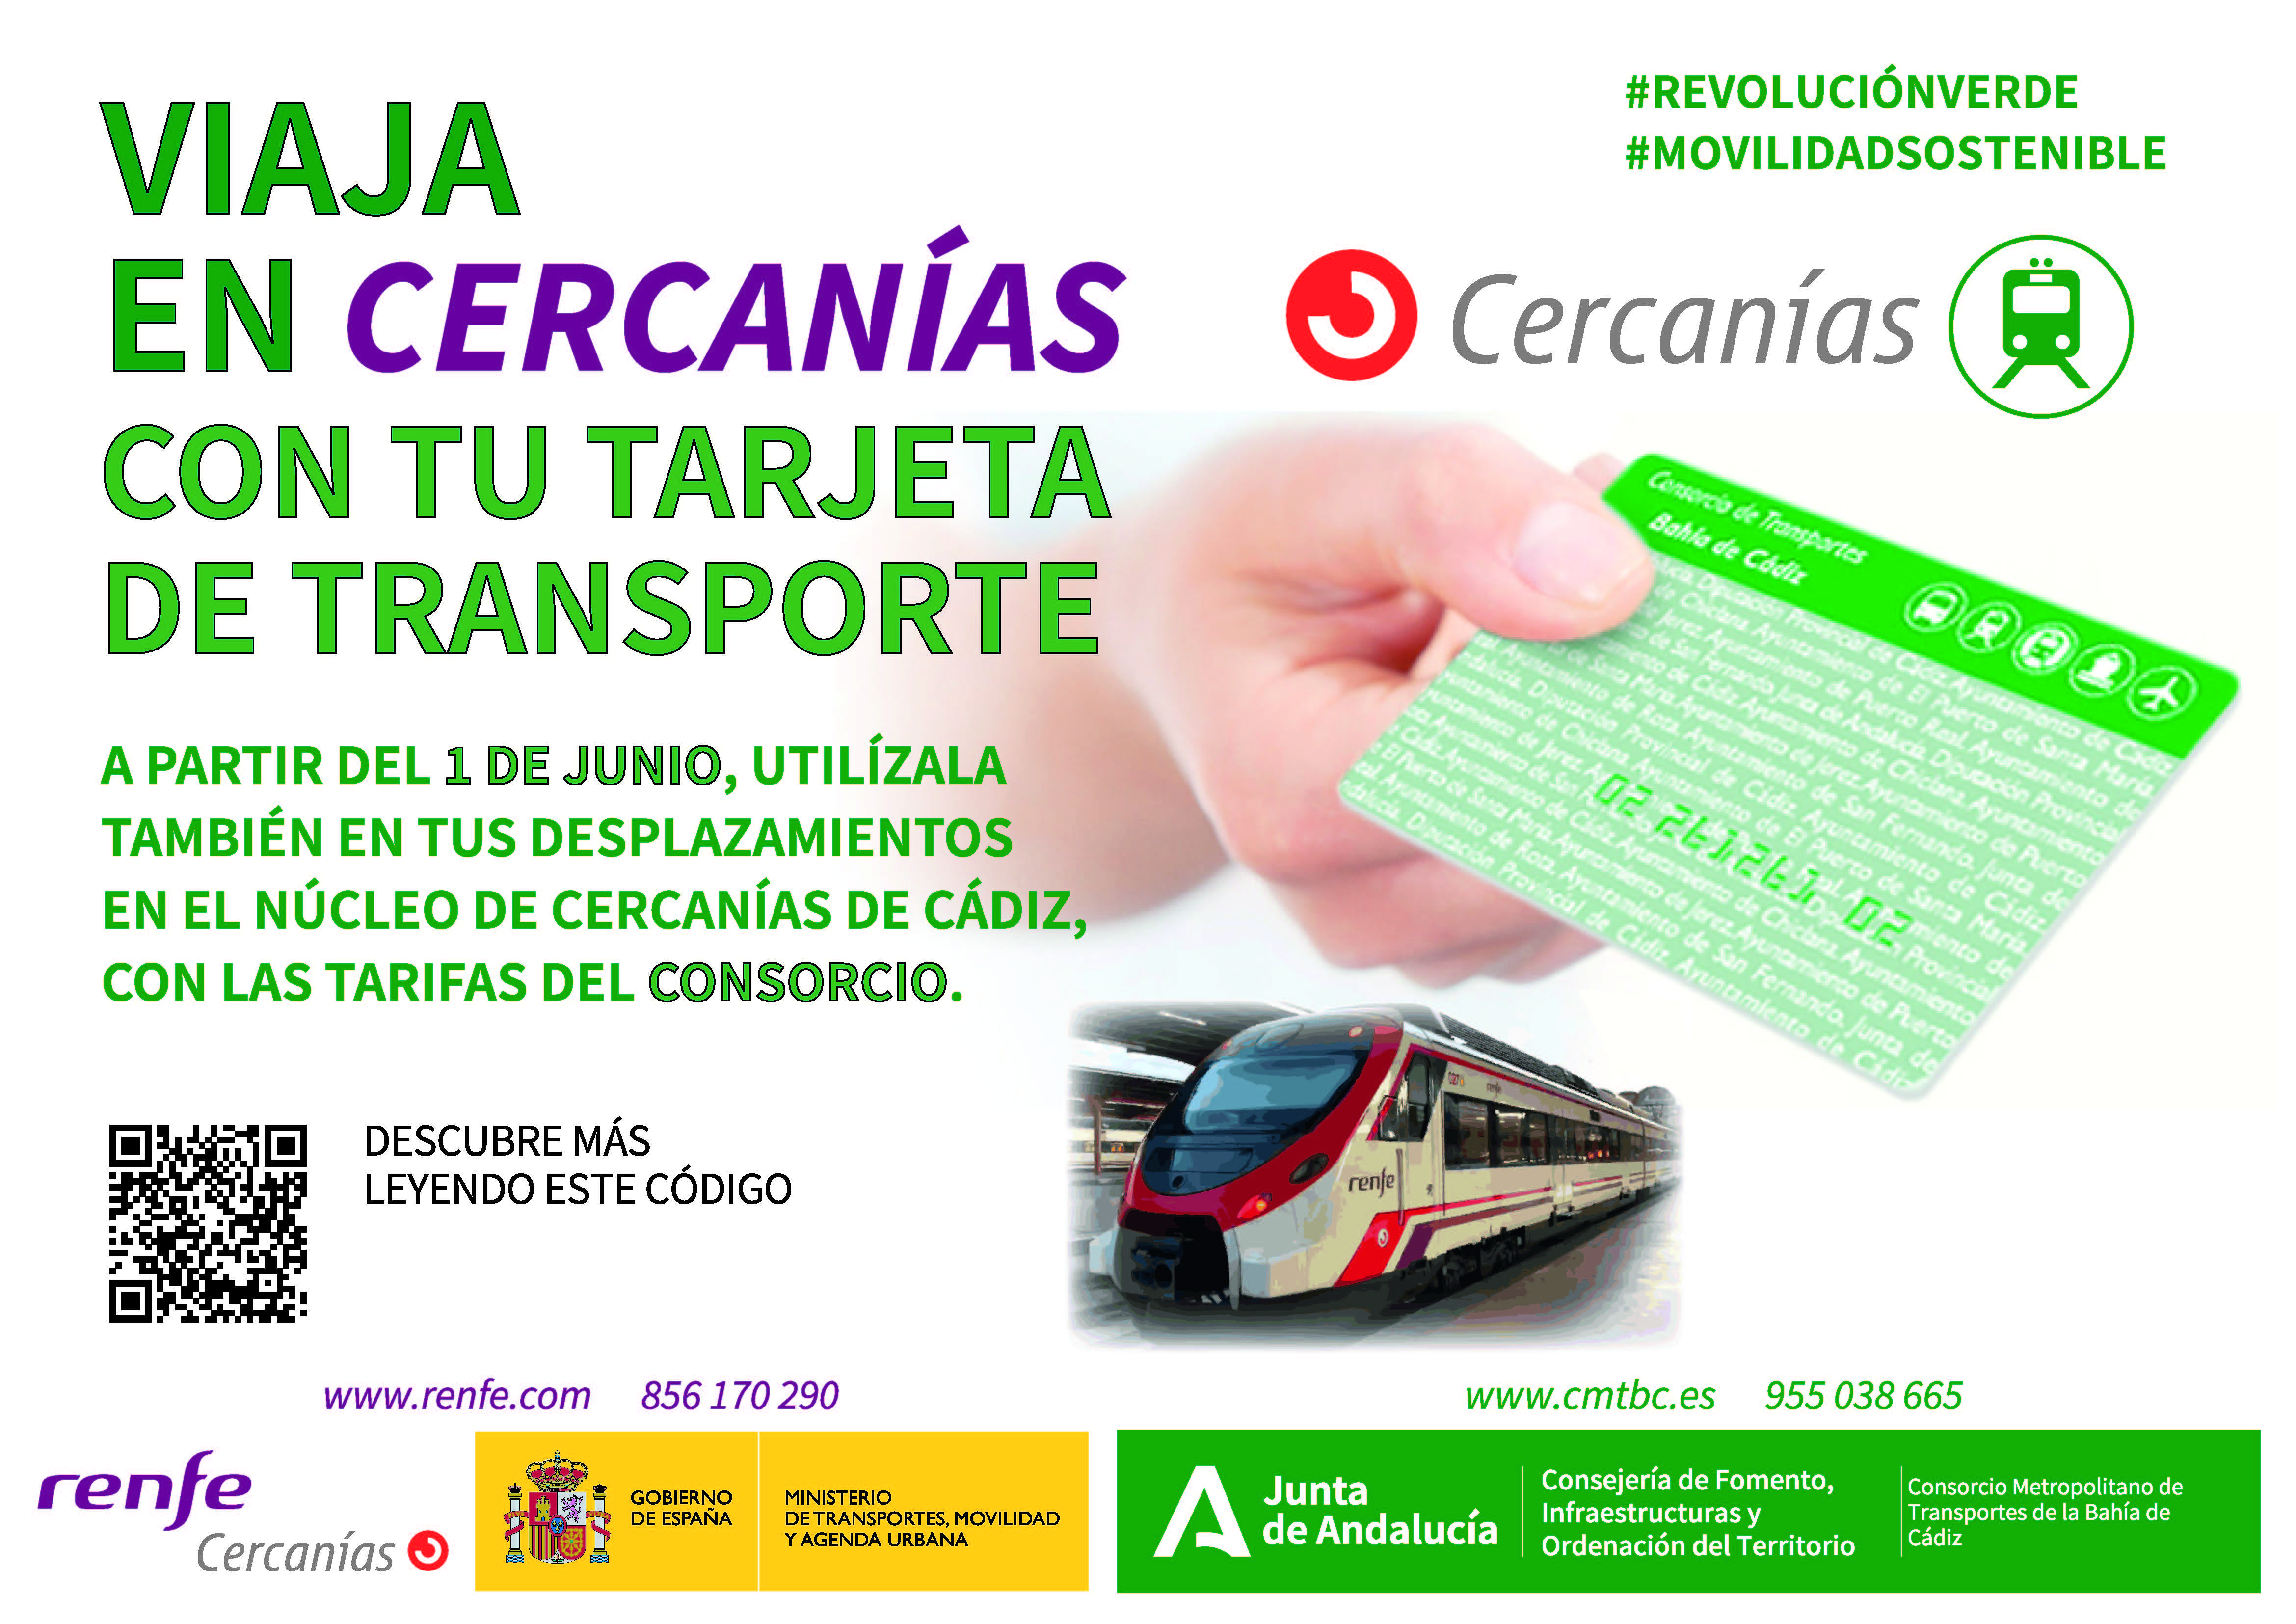 Los viajeros de Cercanías de Cádiz podrán utilizar la tarjeta del Consorcio, a partir de este 1 de junio 